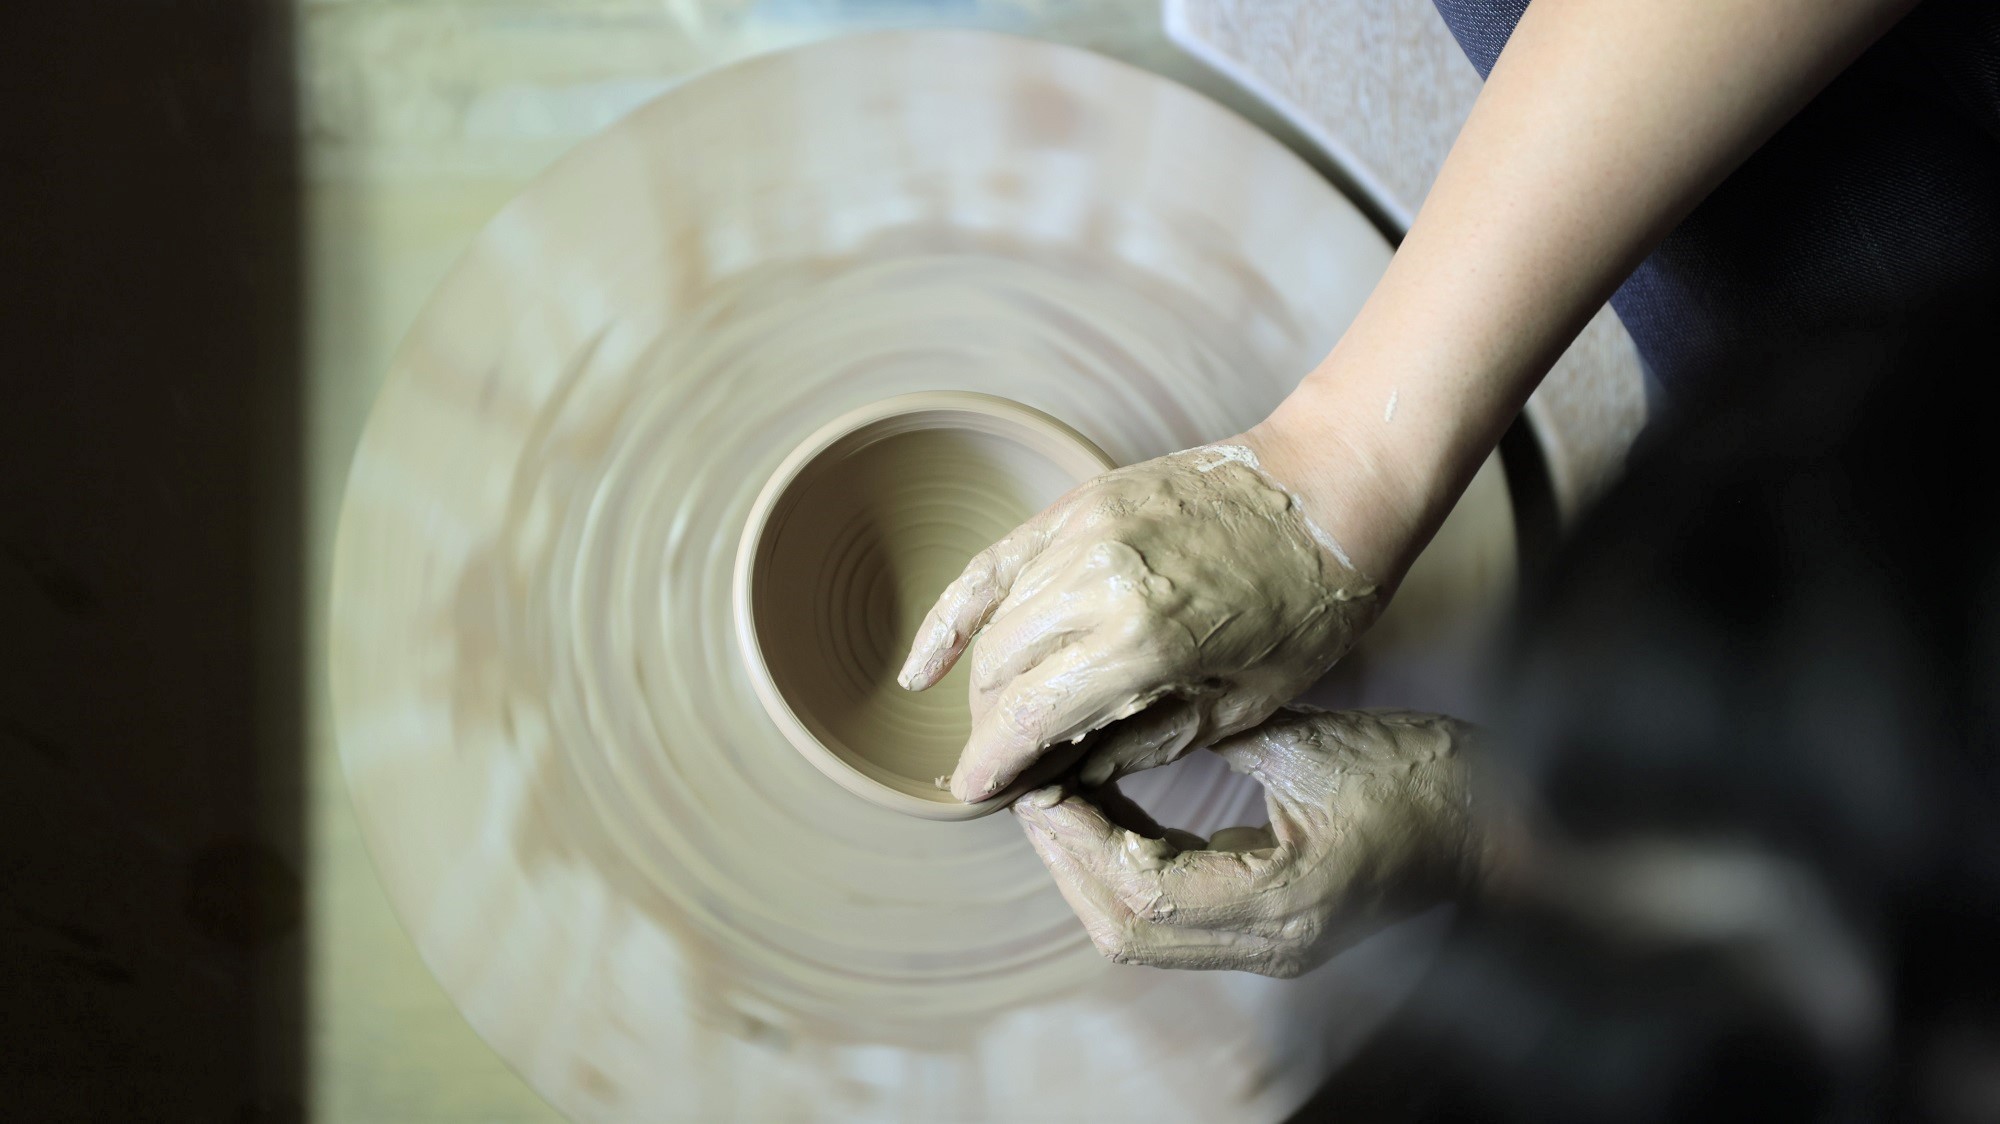 【蘇山窯(そざんがま)】京の情趣をやさしく映す青磁の陶板アートがロビーラウンジで皆さまをお迎えします